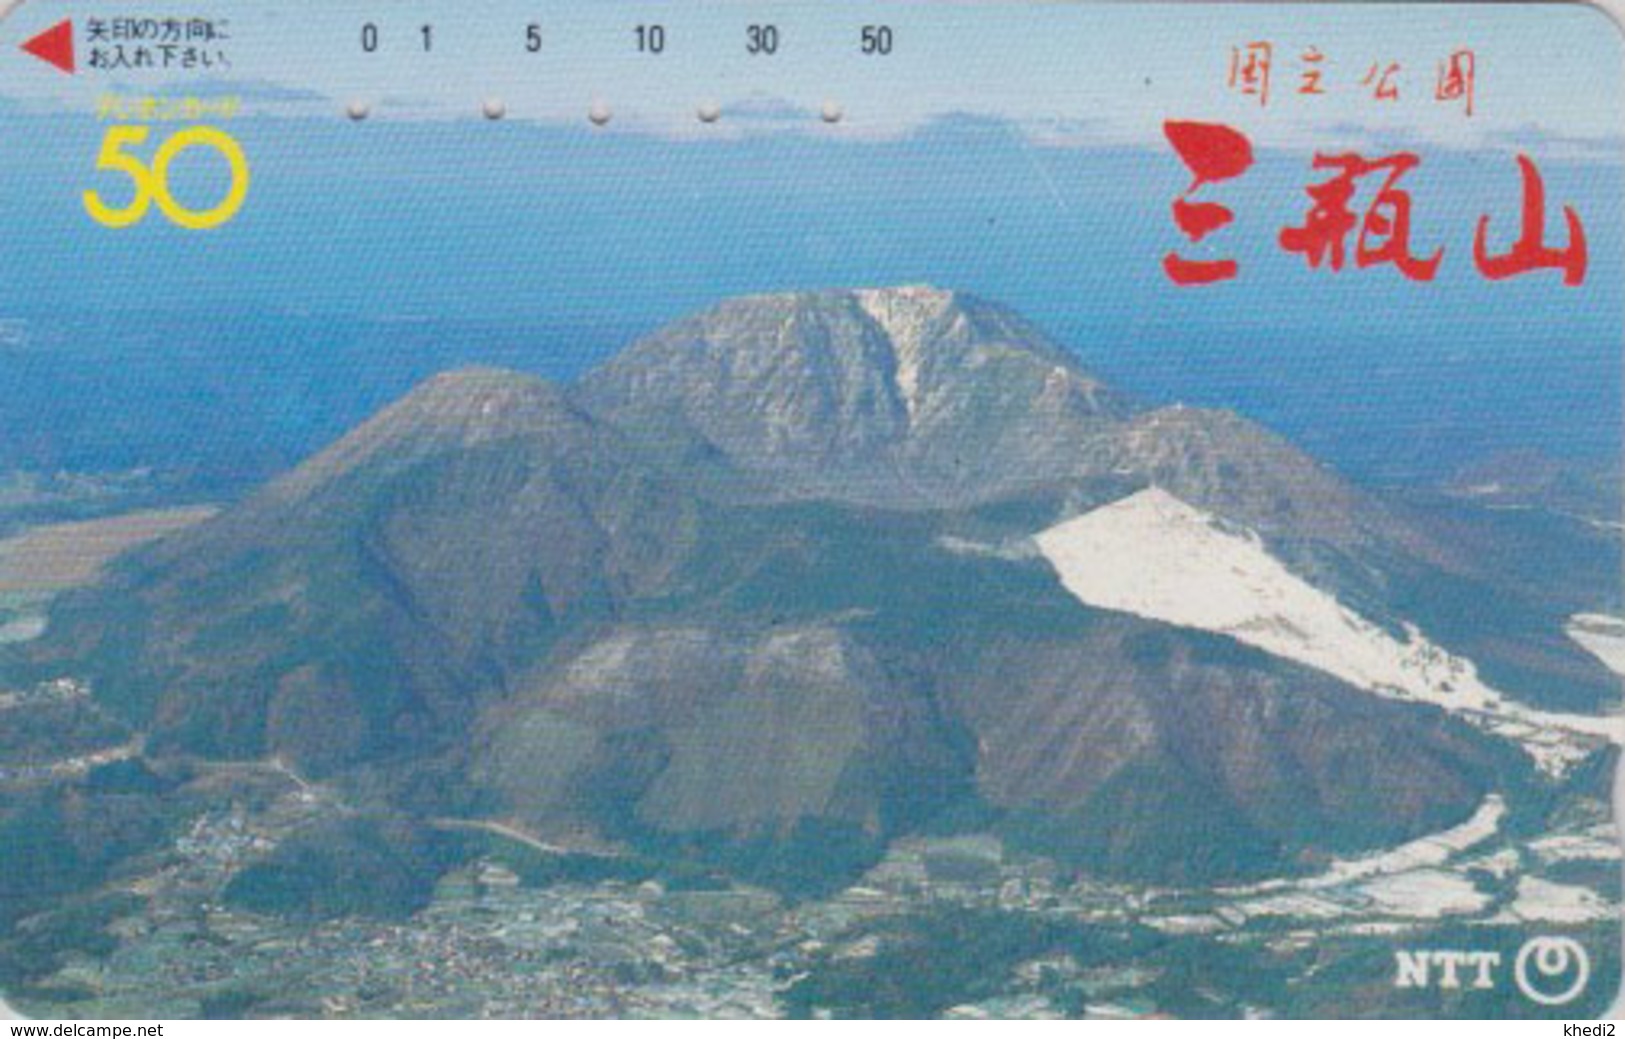 Télécarte JAPON / NTT 350-054 - Cratère De VOLCAN TBE - VULCAN - JAPAN Phonecard - VOLCANO - Volcanos